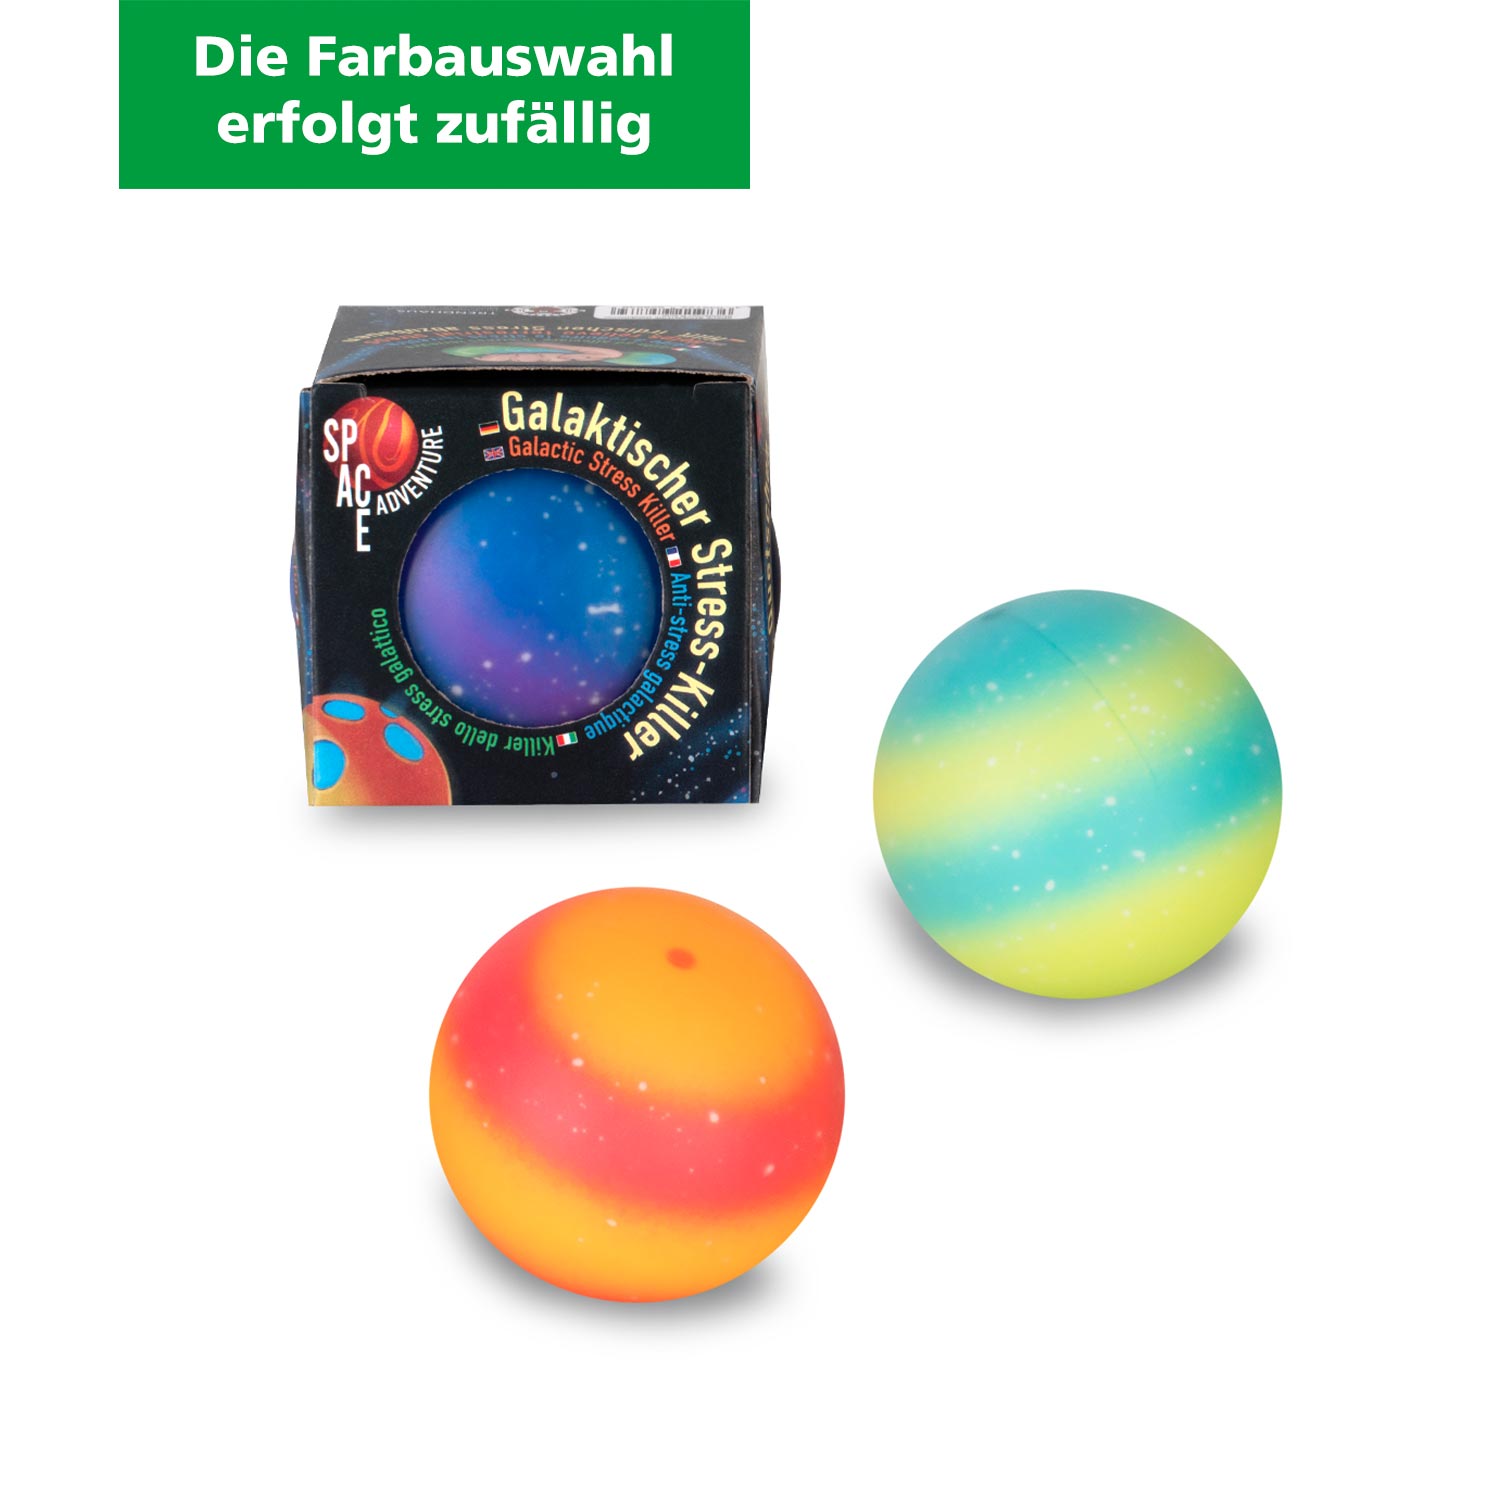 Space Adventure Galaktischer Stress-Killer Anti-Stressball Ø 6 cm (Farbauswahl erfolgt zufällig)